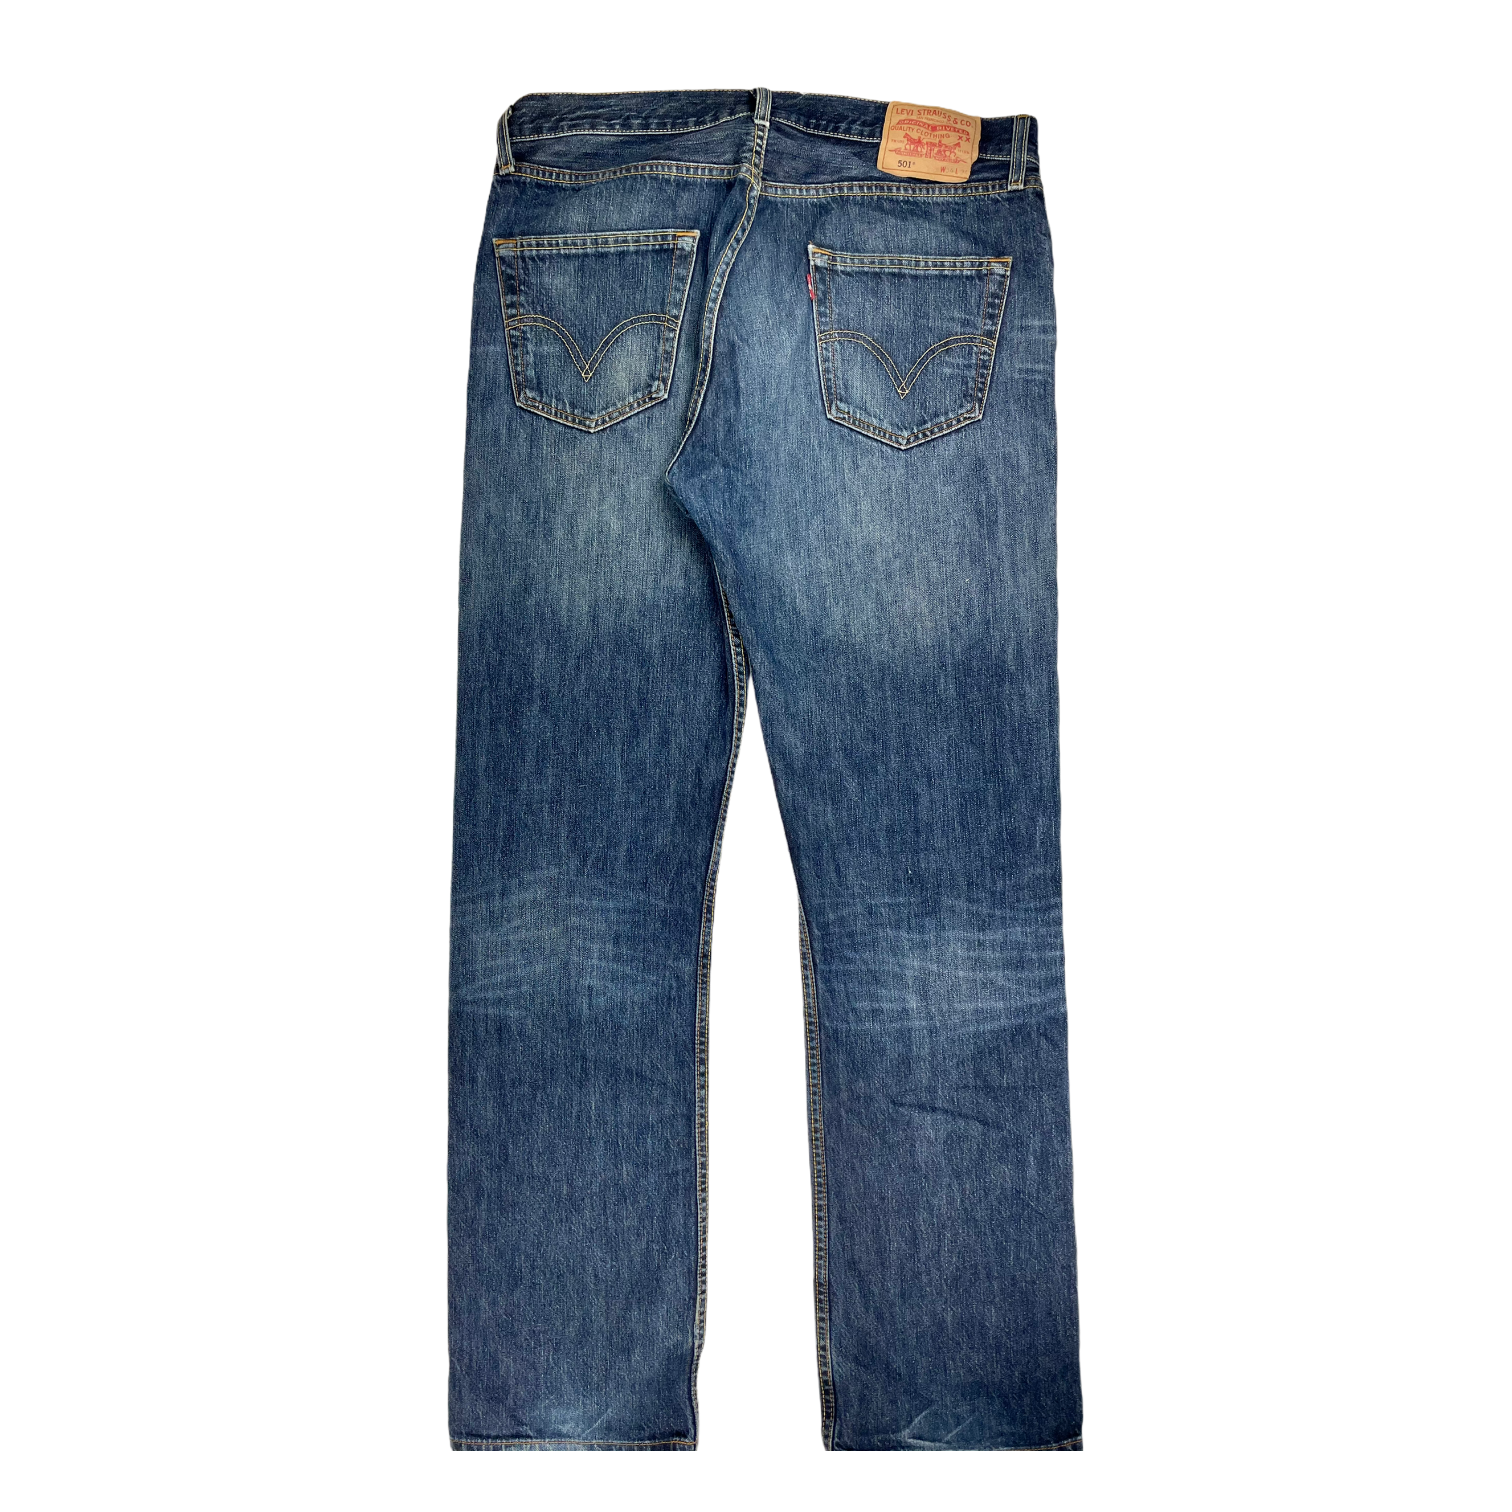 Vintage Levi's jeans 501 - 34/34 - Restorecph